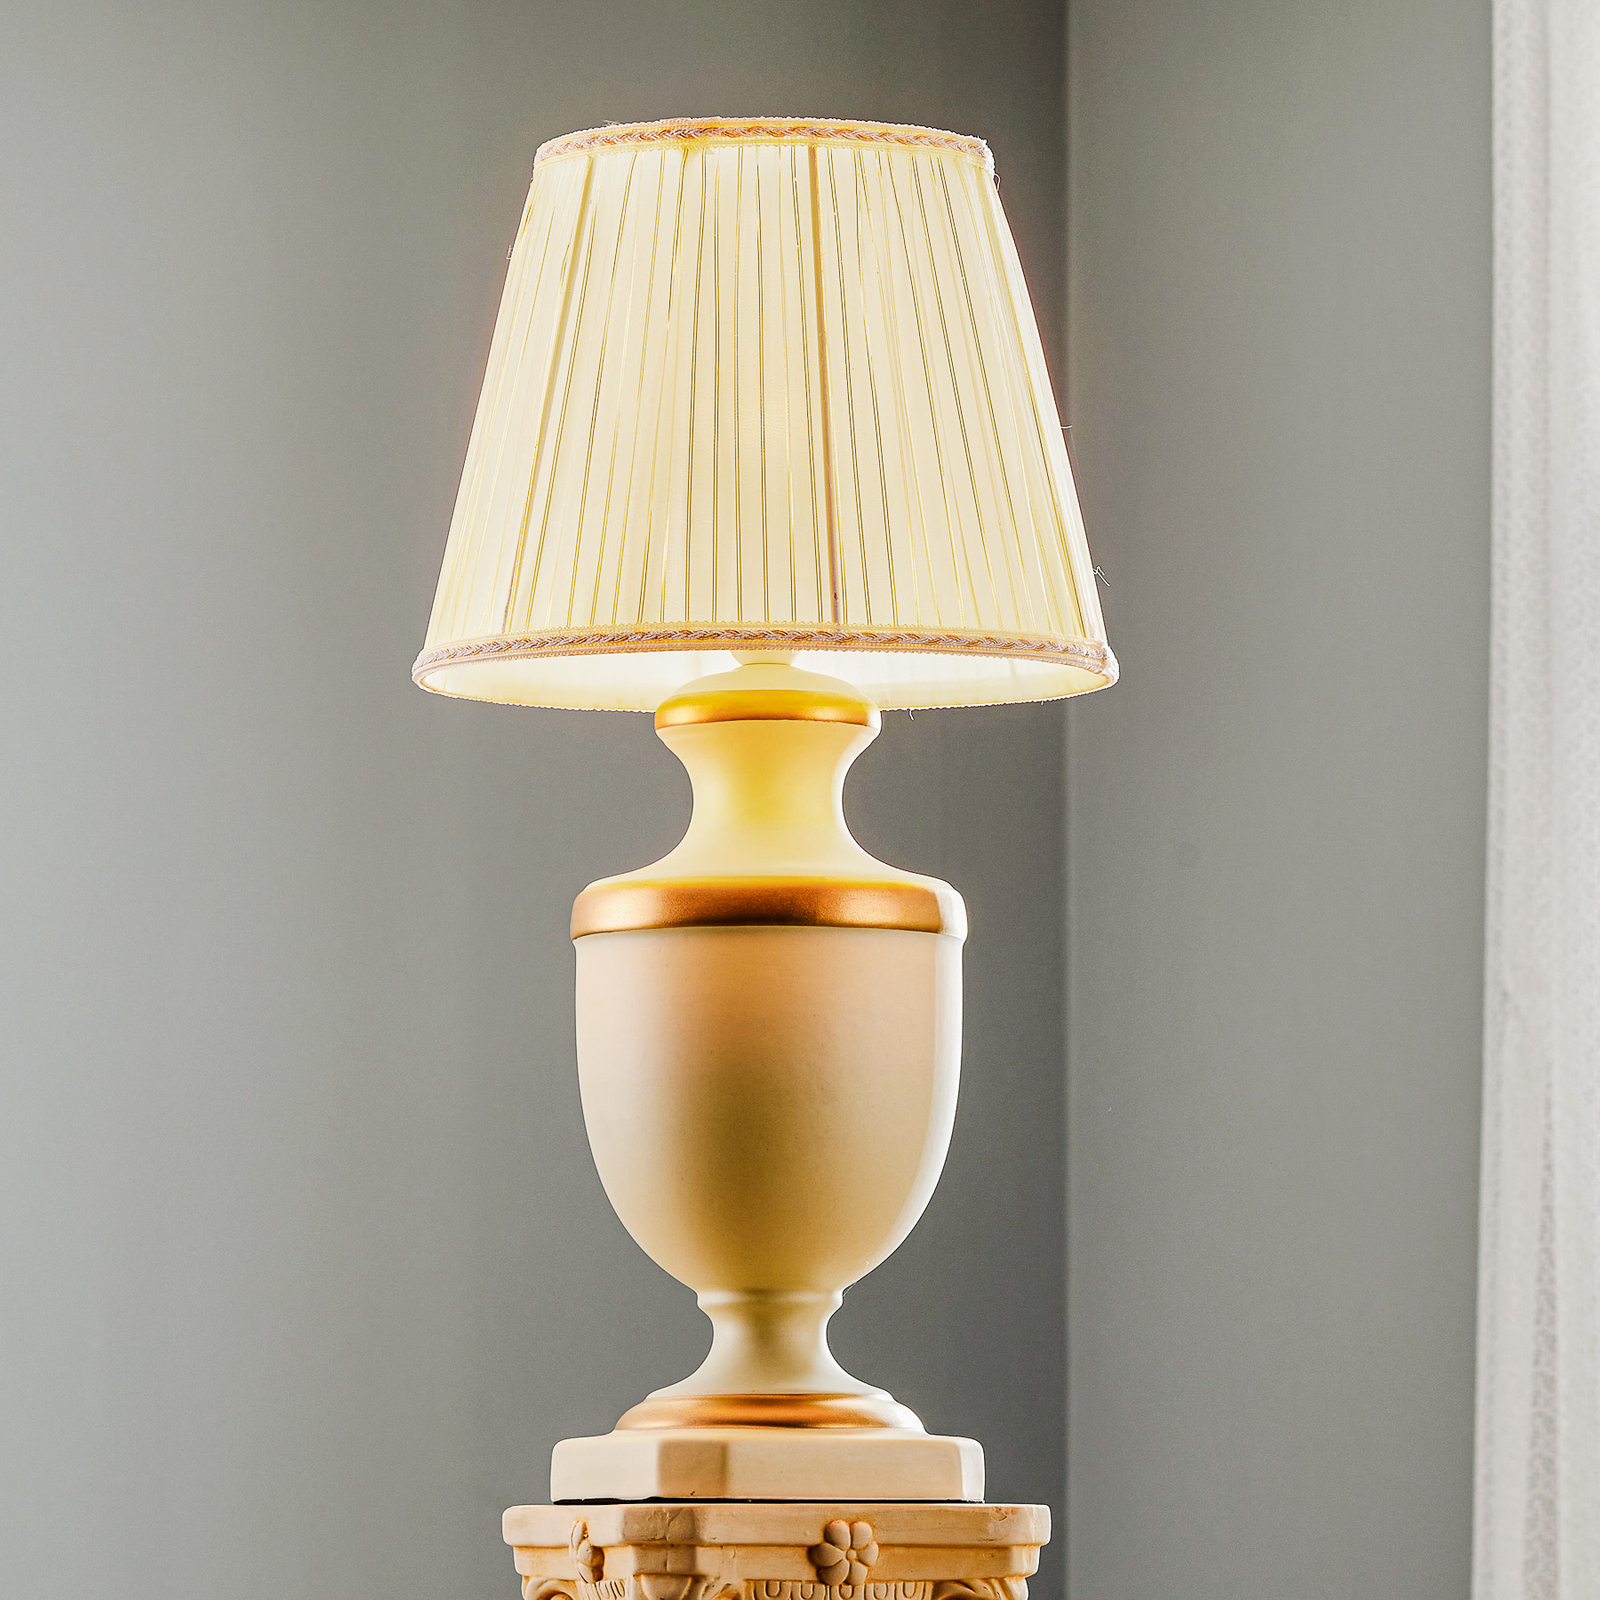 Lámpara de mesa Imperiale, cerámica, altura 56 cm